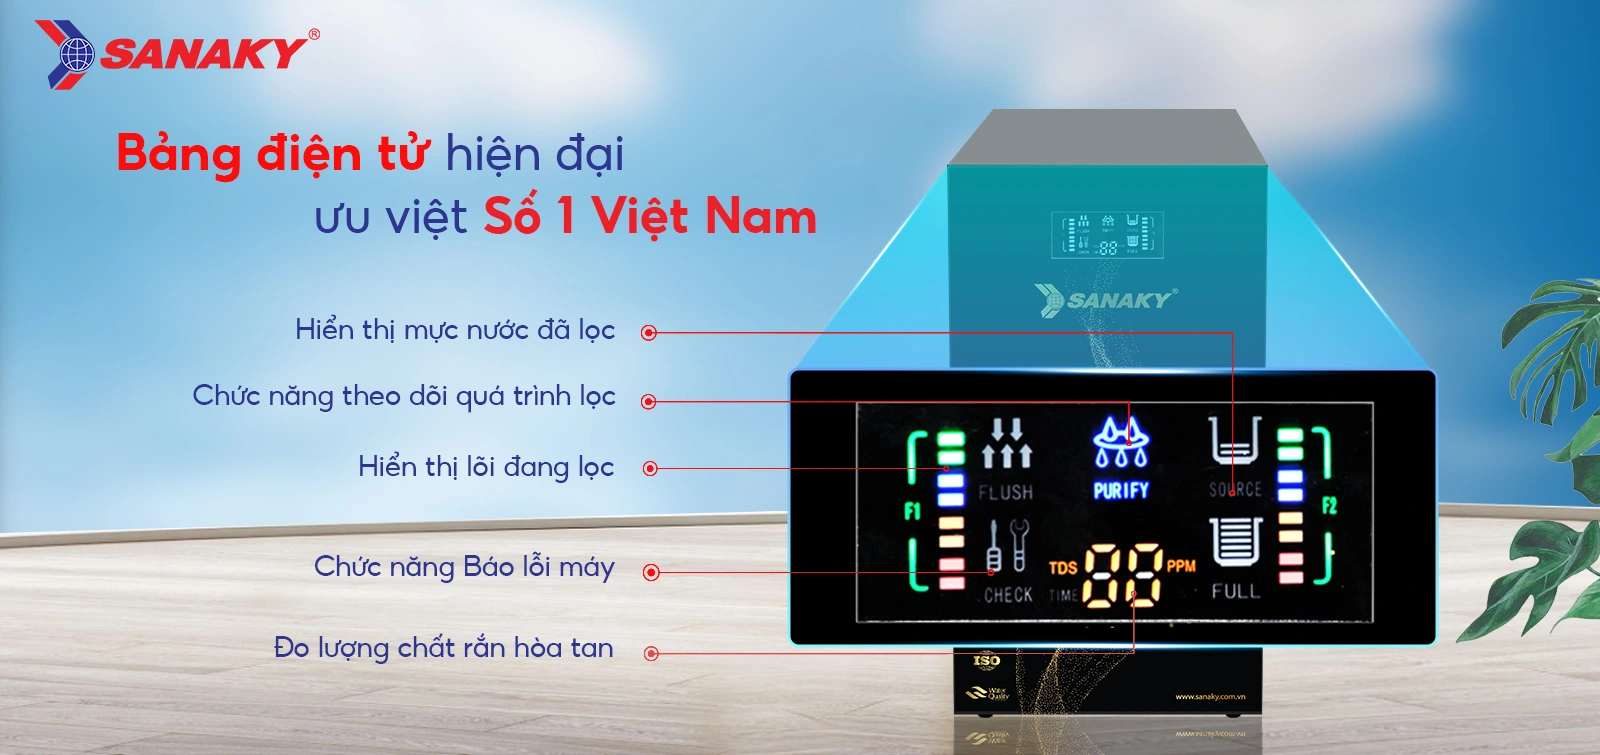 Bảng điện tử hiện đại ưu việt số 1 Việt Nam